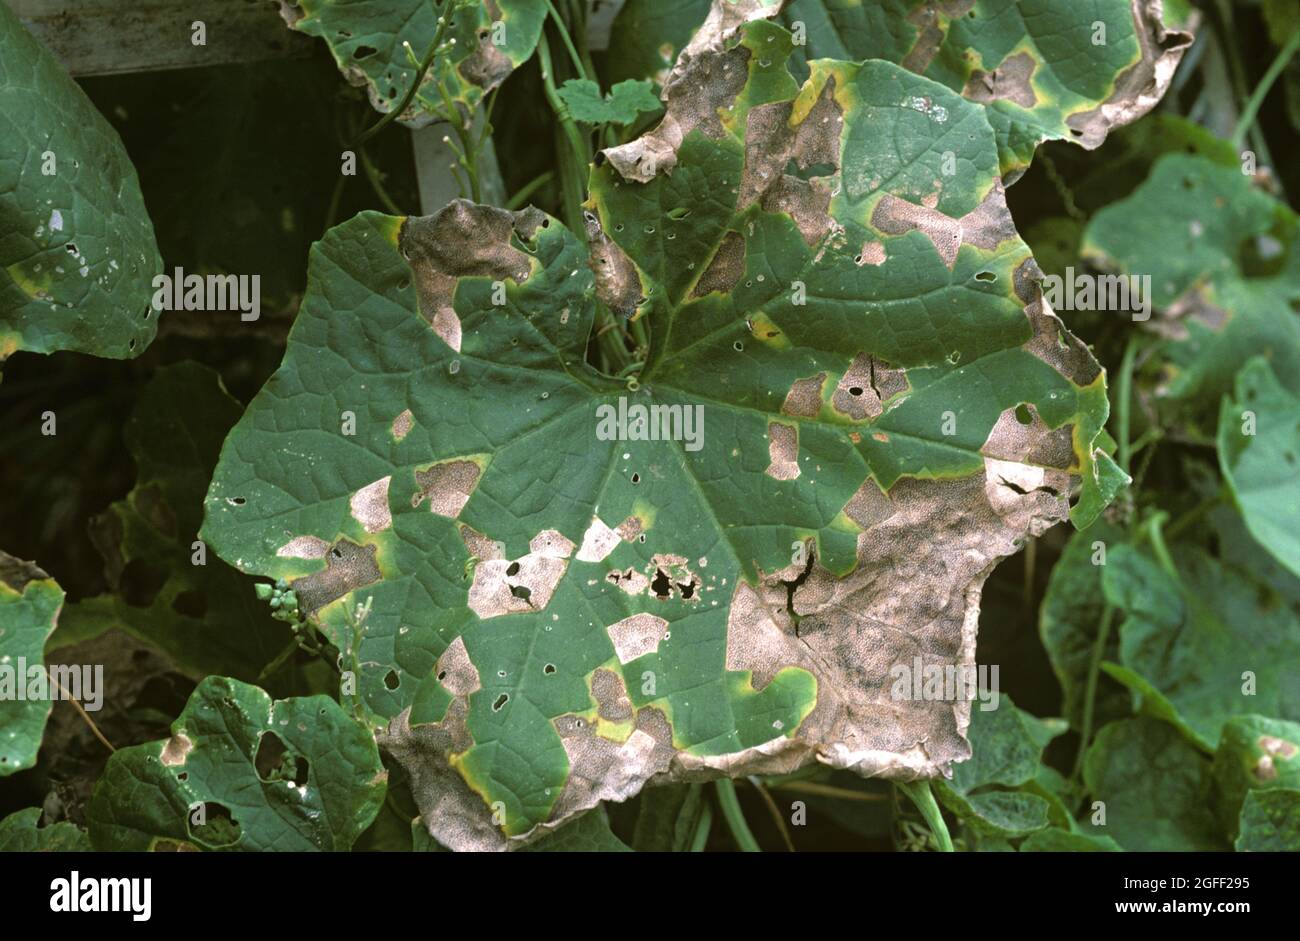 Cucurbit angulaire tache foliaire (Pseudomonas syringae pv lacrymans) lésions d'une maladie bactérienne de la courge, Thaïlande Banque D'Images